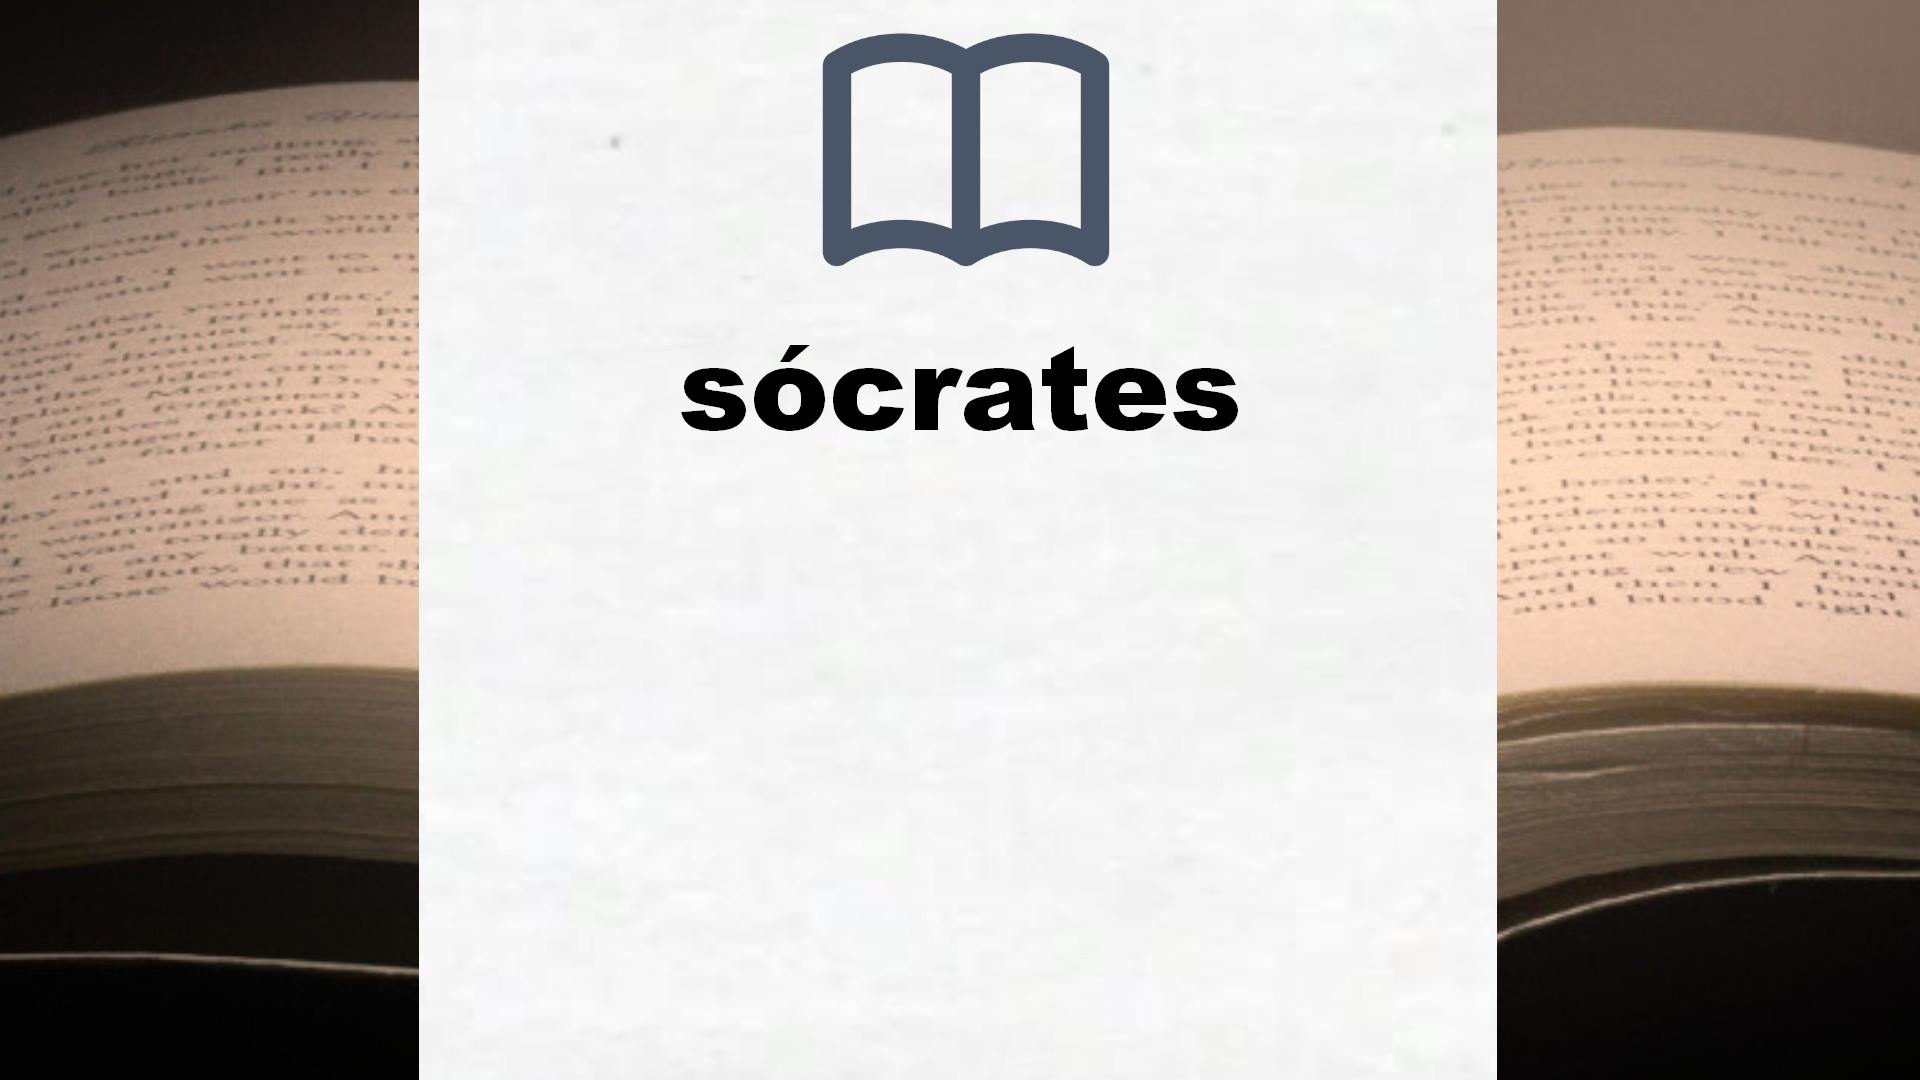 Libros sobre sócrates